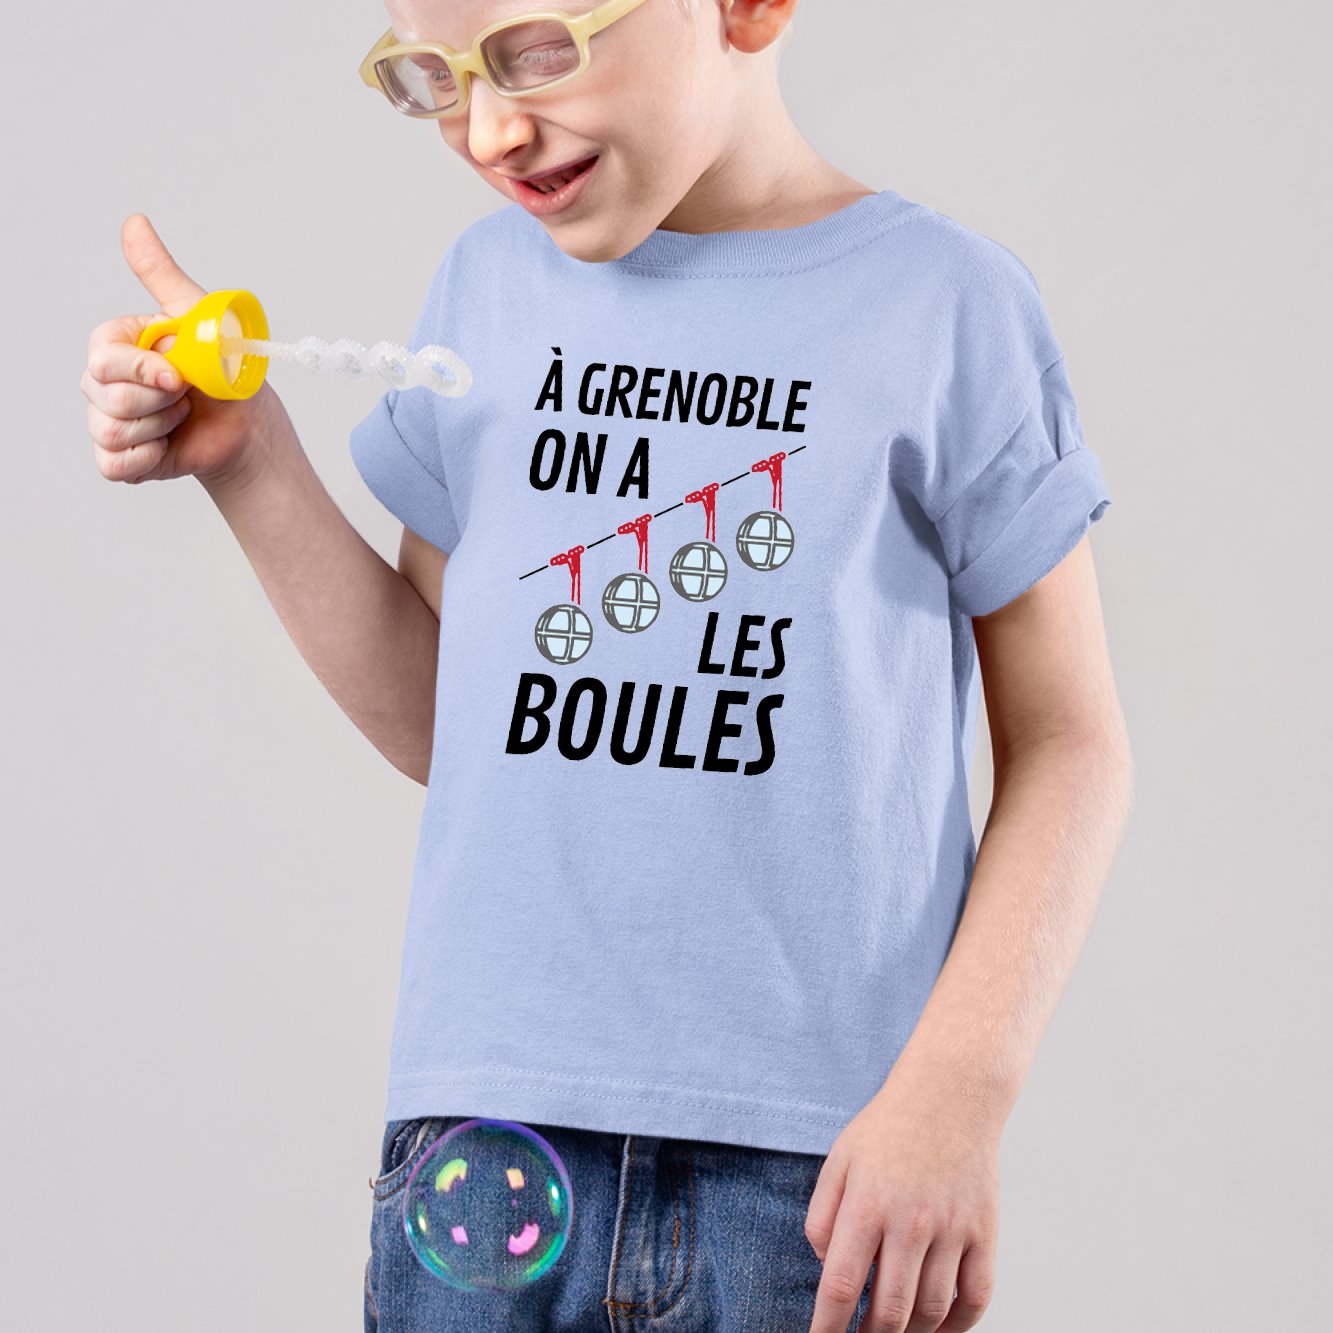 T-Shirt Enfant À Grenoble on a les boules Bleu